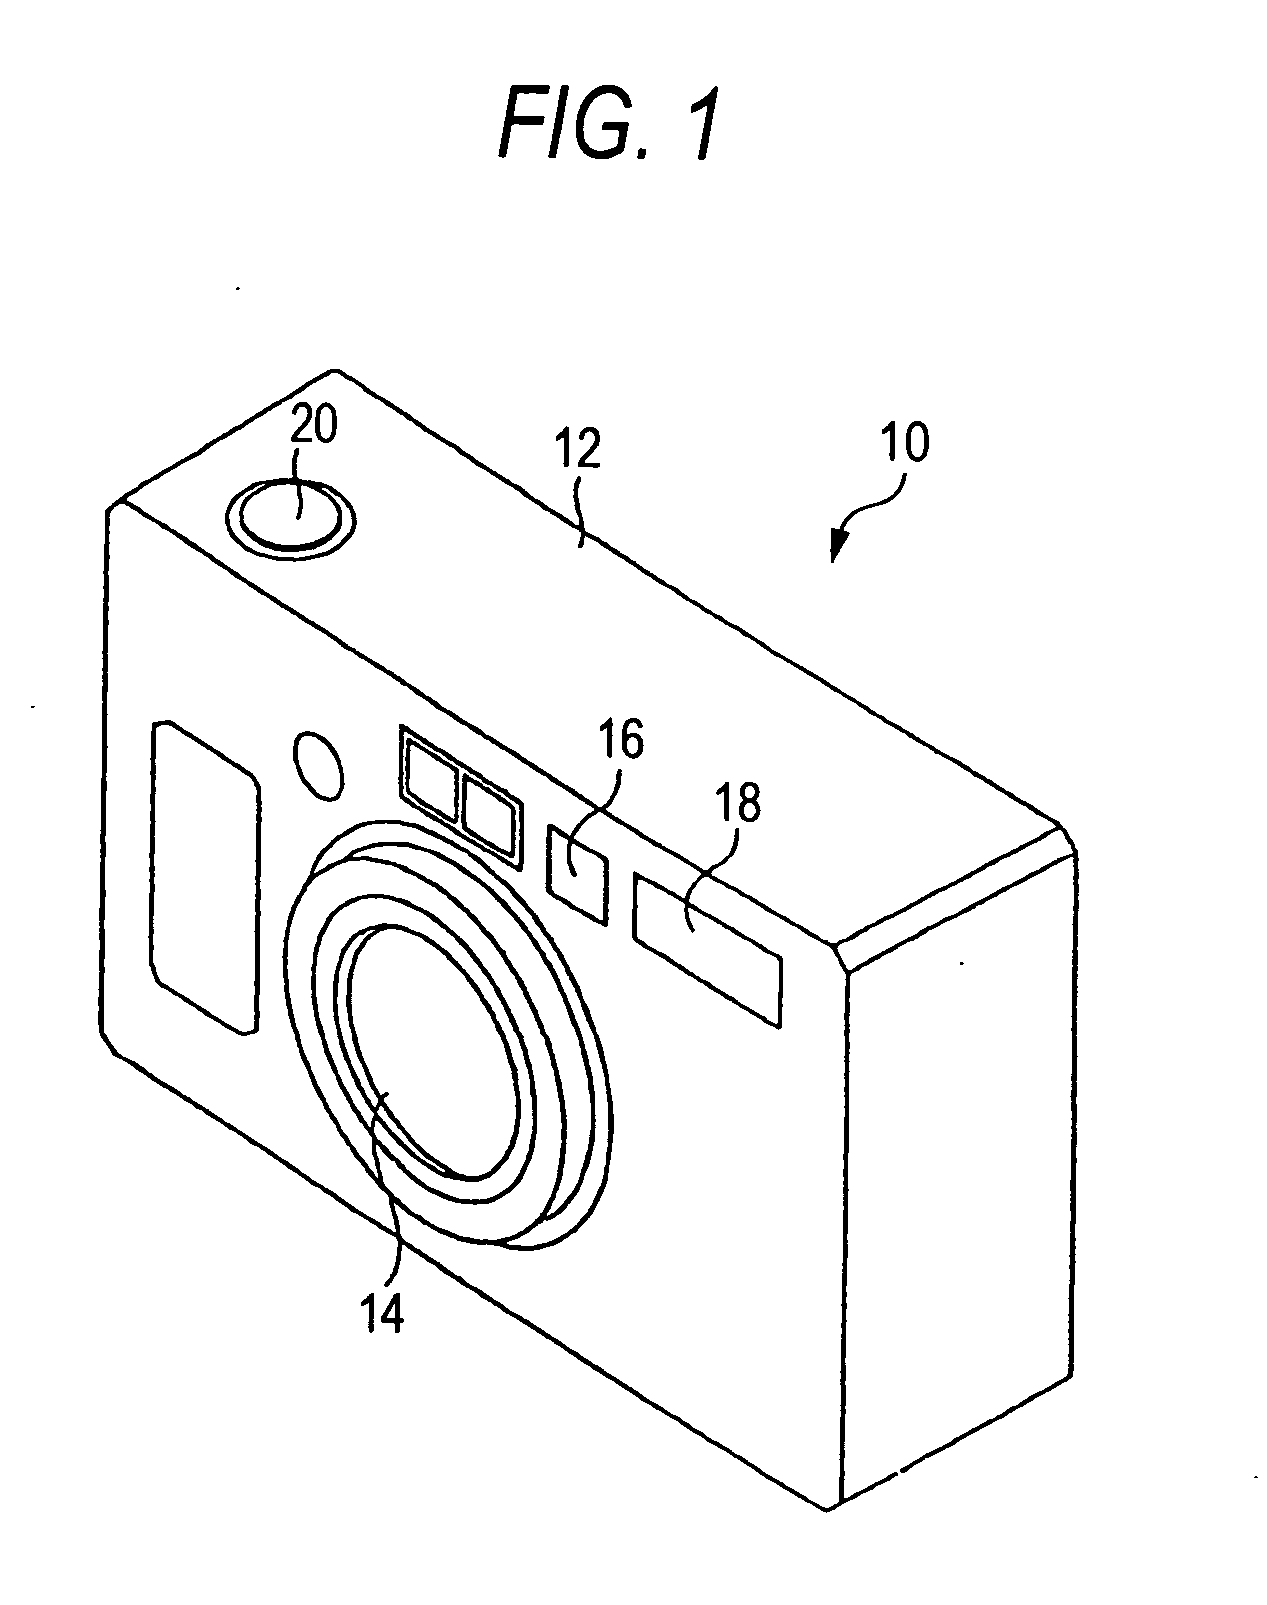 Rotational driving apparatus and camera using the rotational driving apparatus